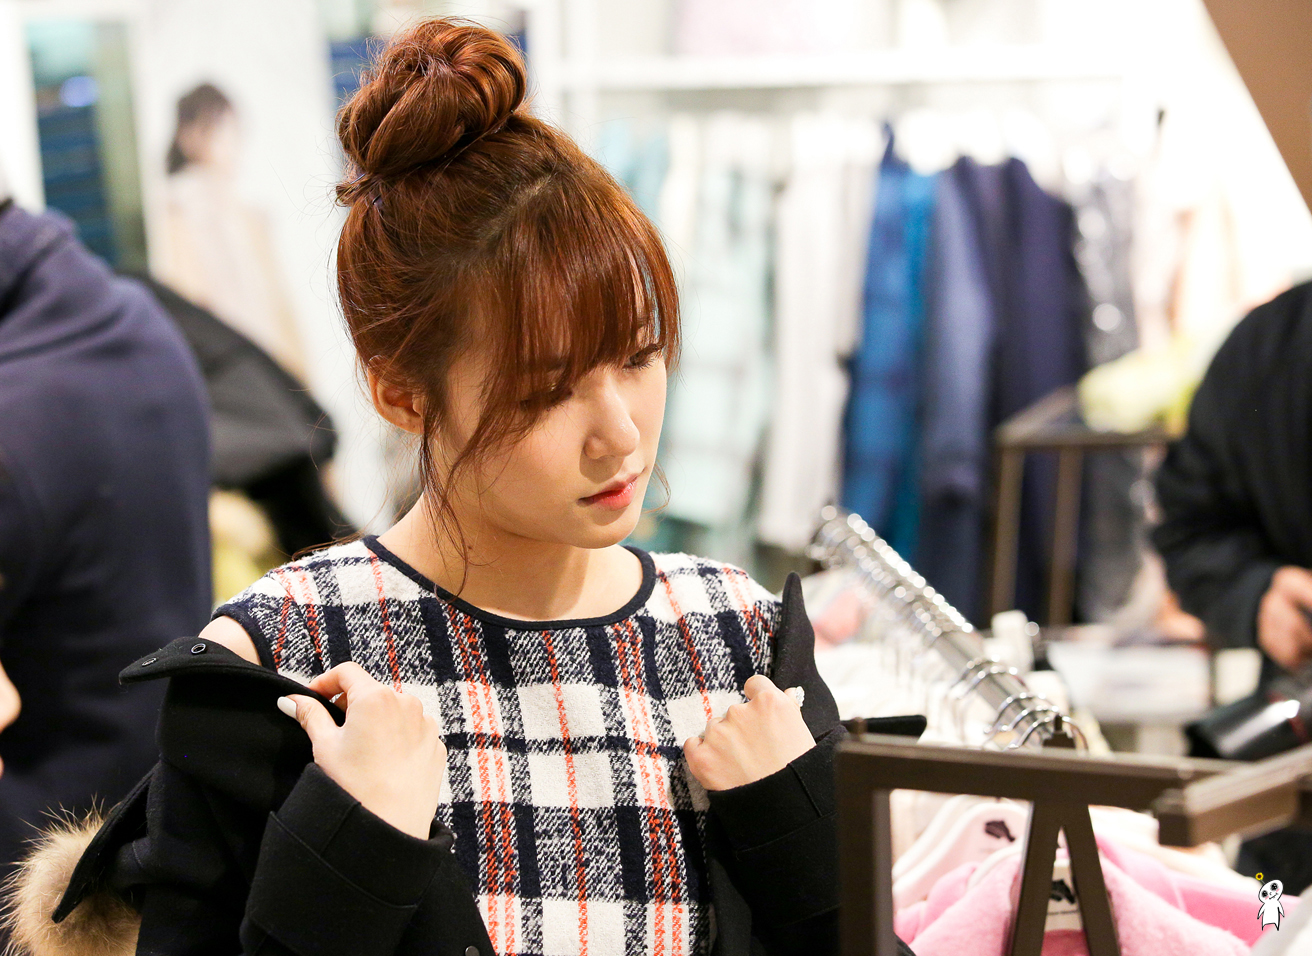 [PIC][28-11-2013]Tiffany ghé thăm cửa hàng "QUA" ở Hyundai Department Store vào trưa nay - Page 3 2546B03F52980CB0227A8B